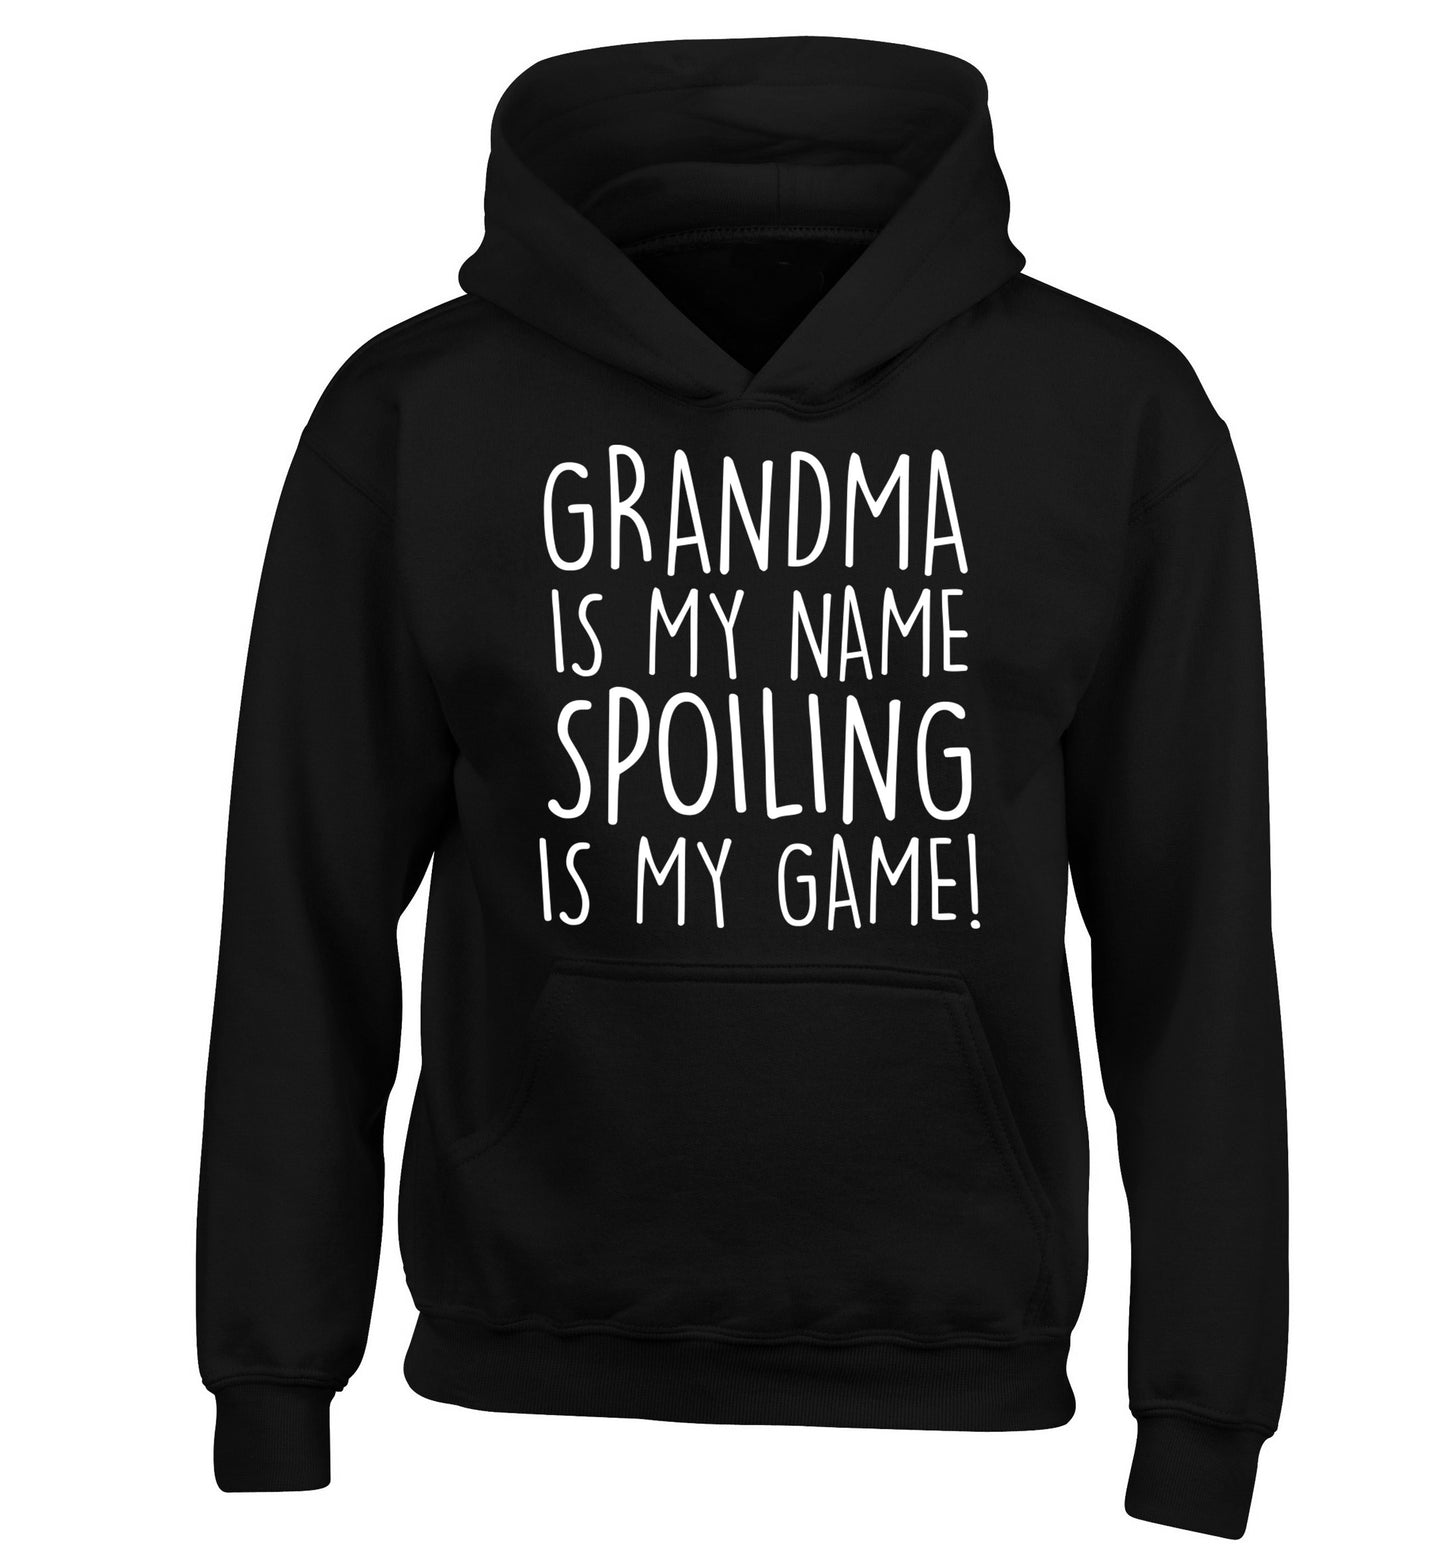 Grandma is my name, spoiling is my game children's black hoodie 12-14 Years